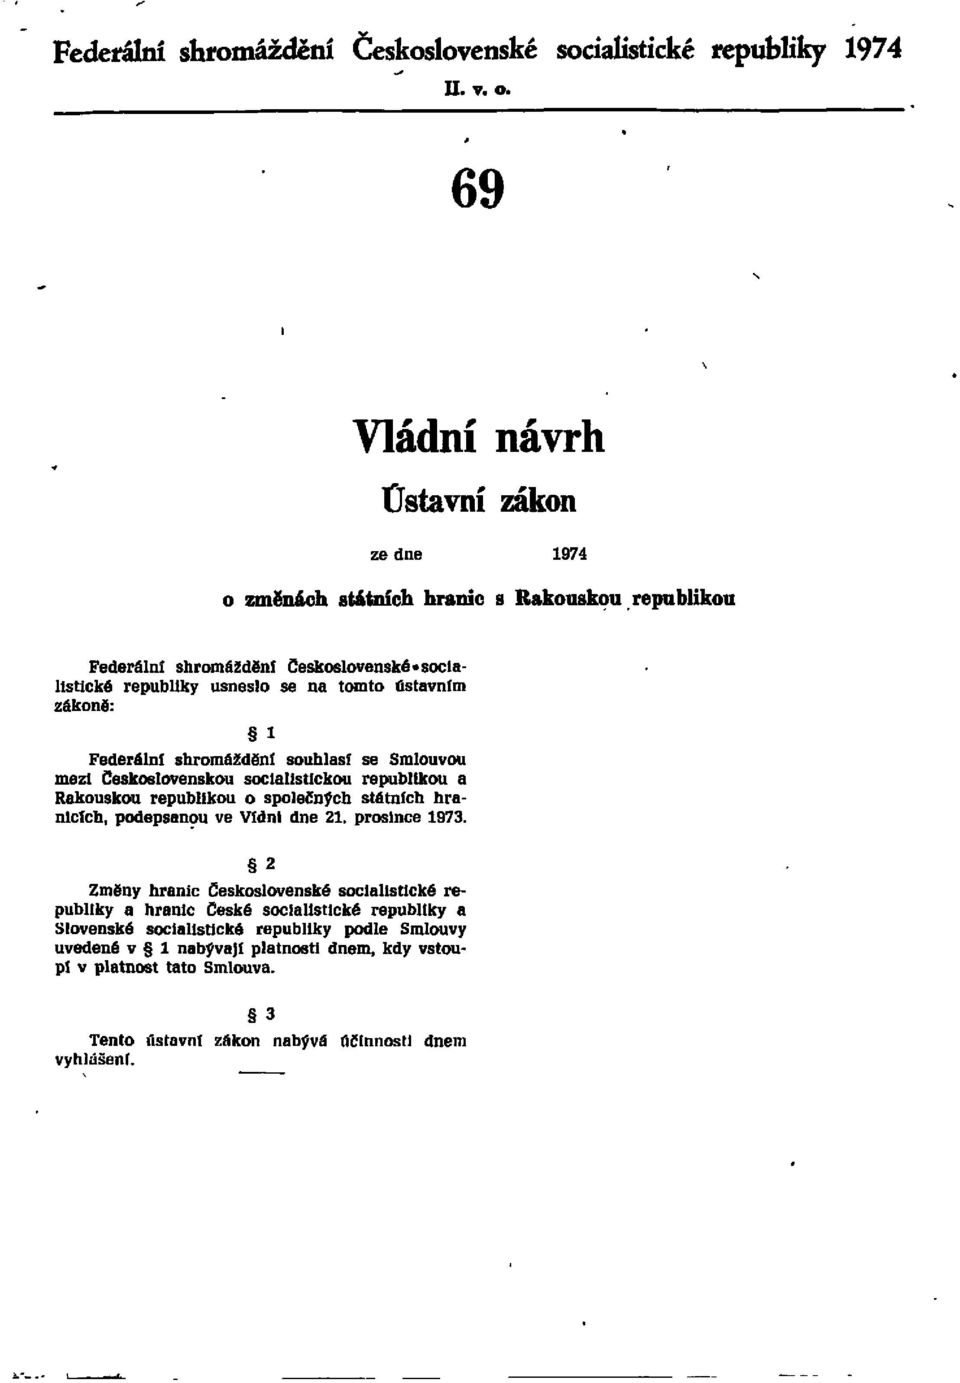 zákoně: l Federální shromáždění souhlasí se Smlouvou mezi Československou socialistickou republikou a Rakouskou republikou o společných státních hranicích, podepsanou ve Vídni dne